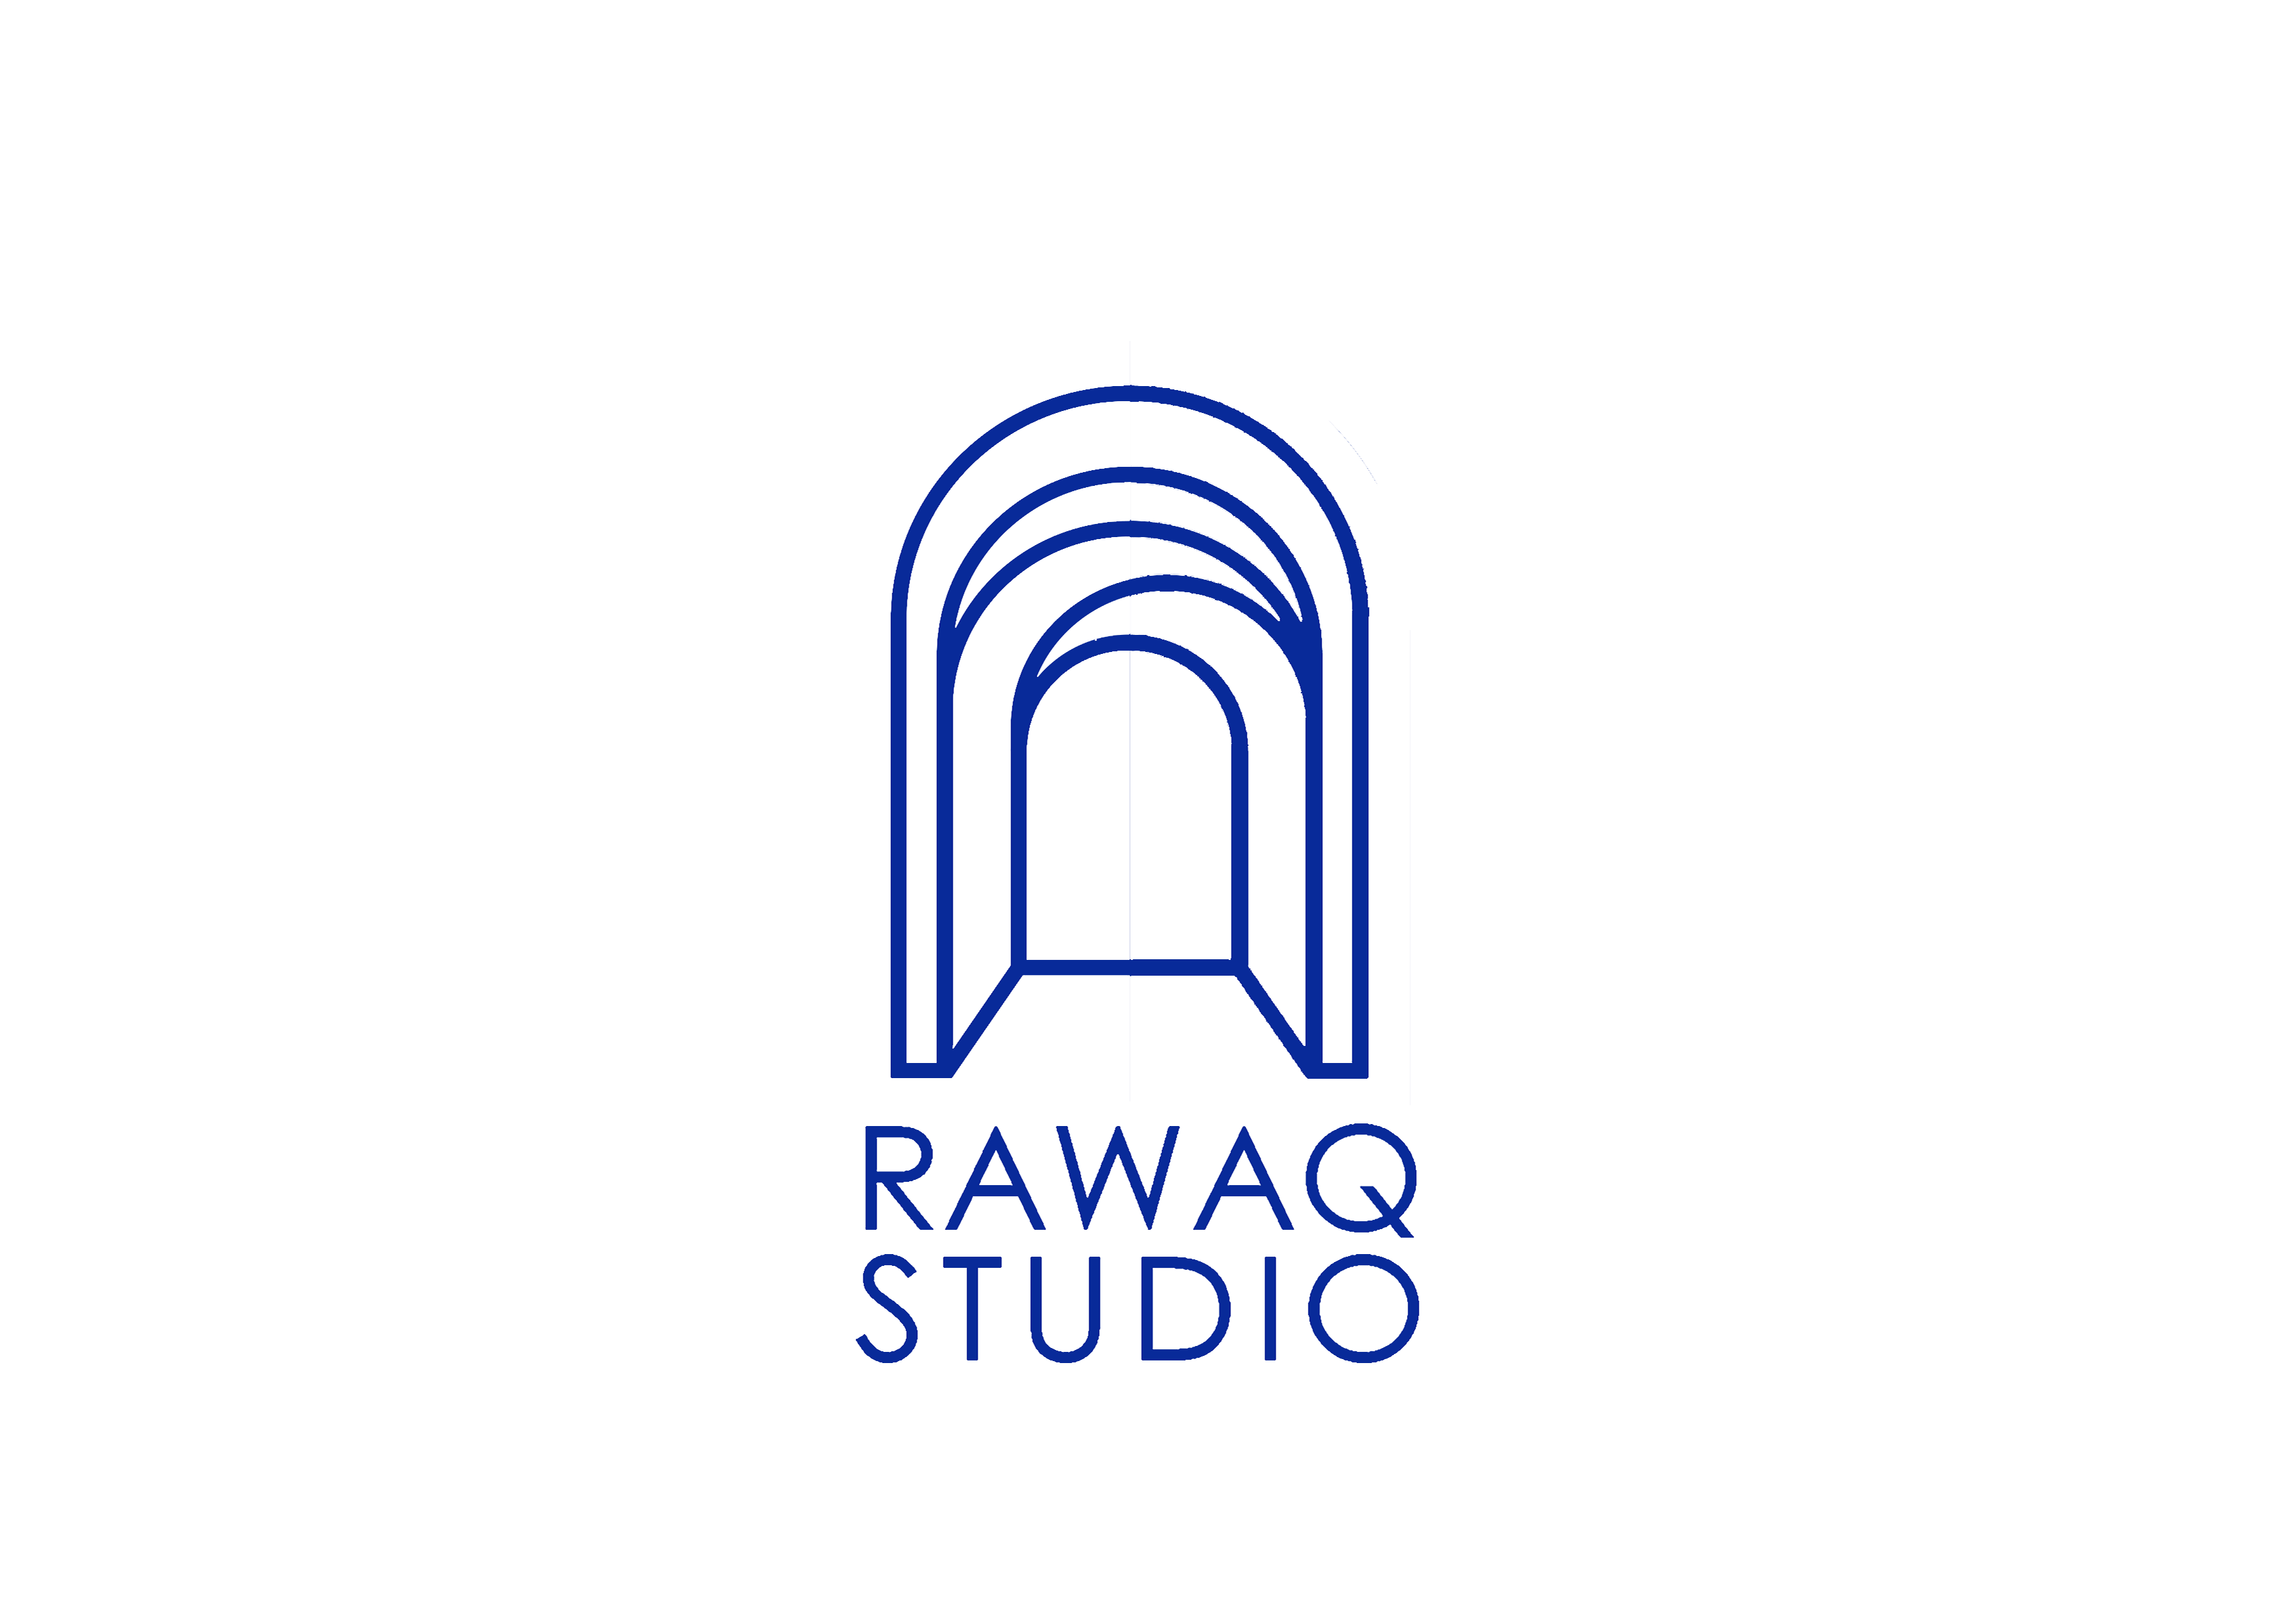 Rwaq Studio